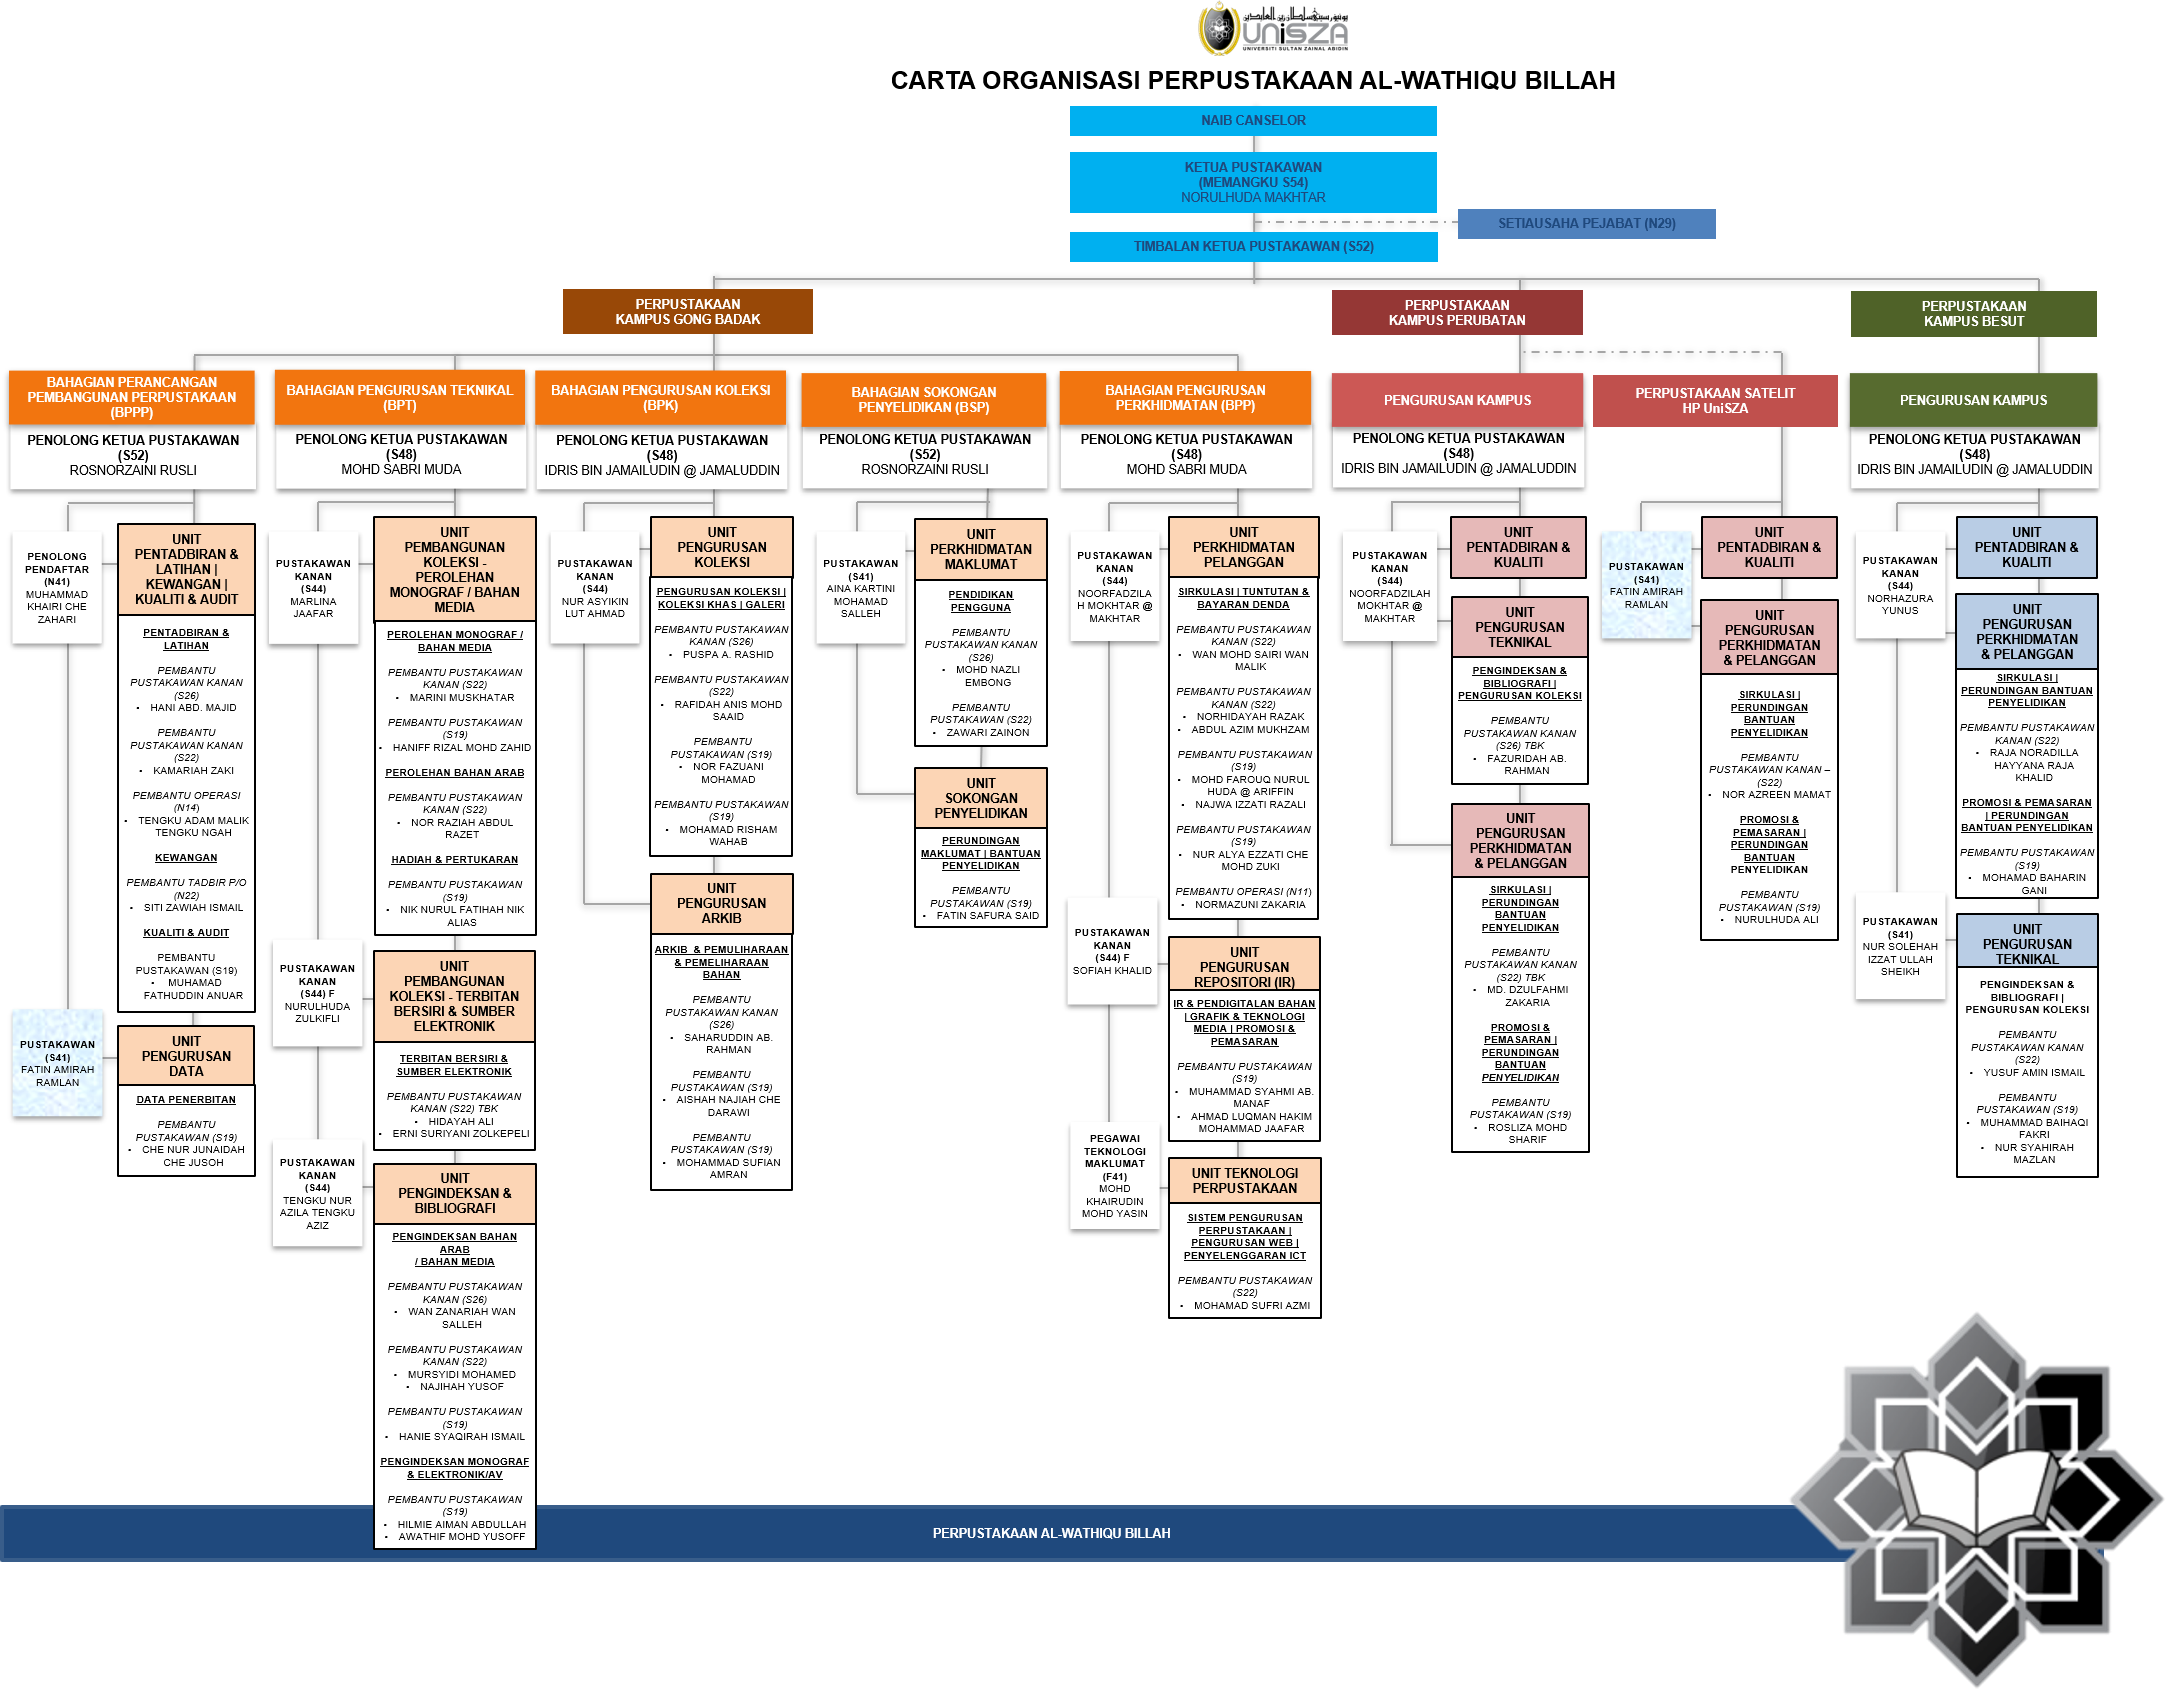 PWB Organization Chart